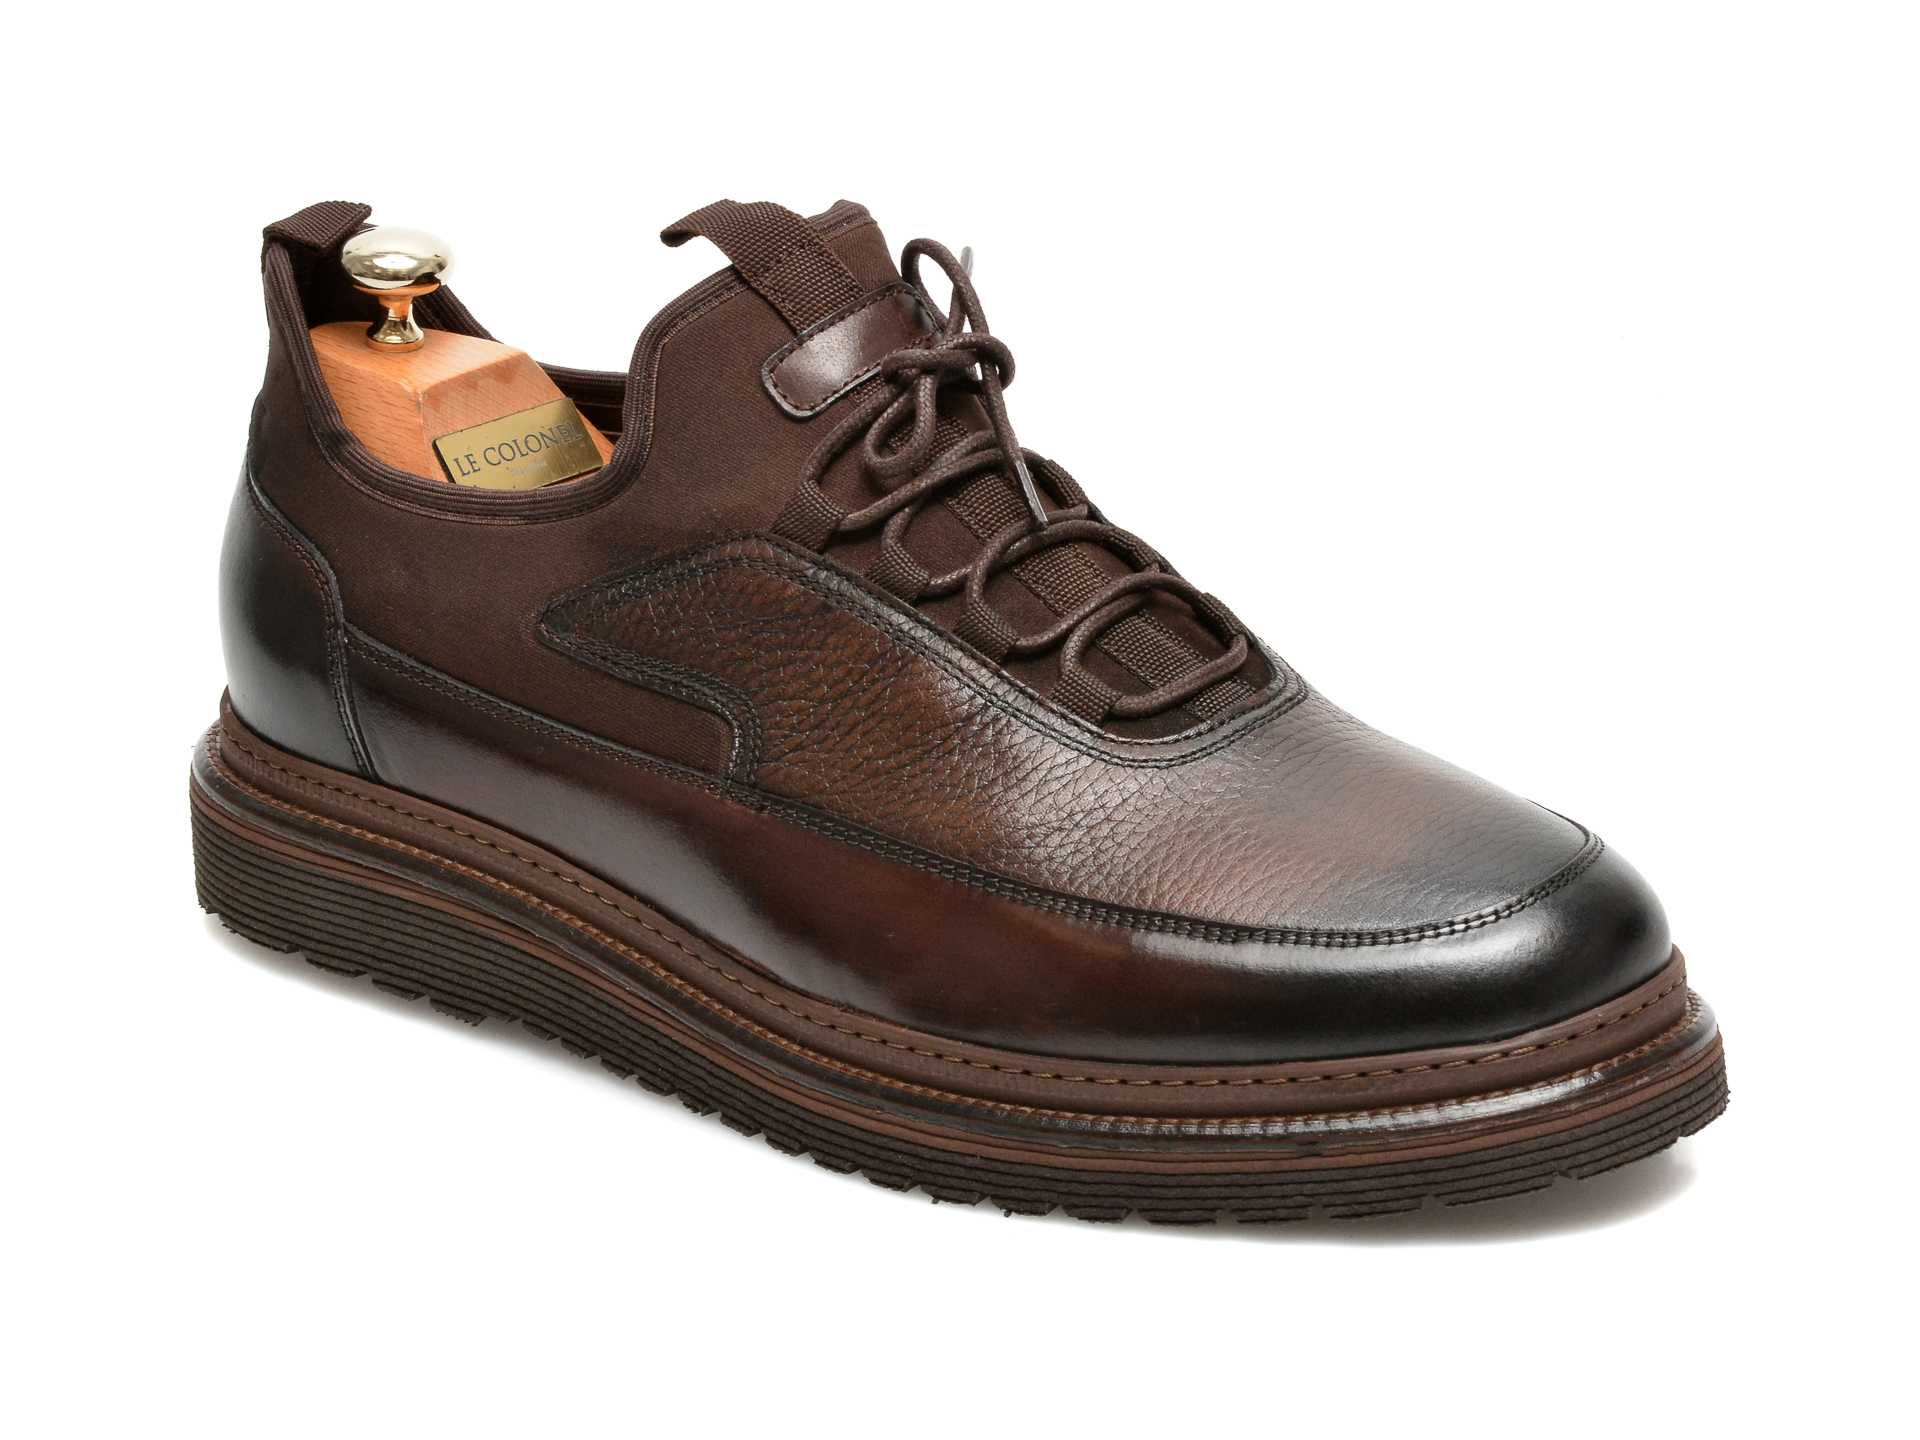 Pantofi LE COLONEL maro, 64816, din material textil si piele naturala imagine reduceri black friday 2021 Le Colonel